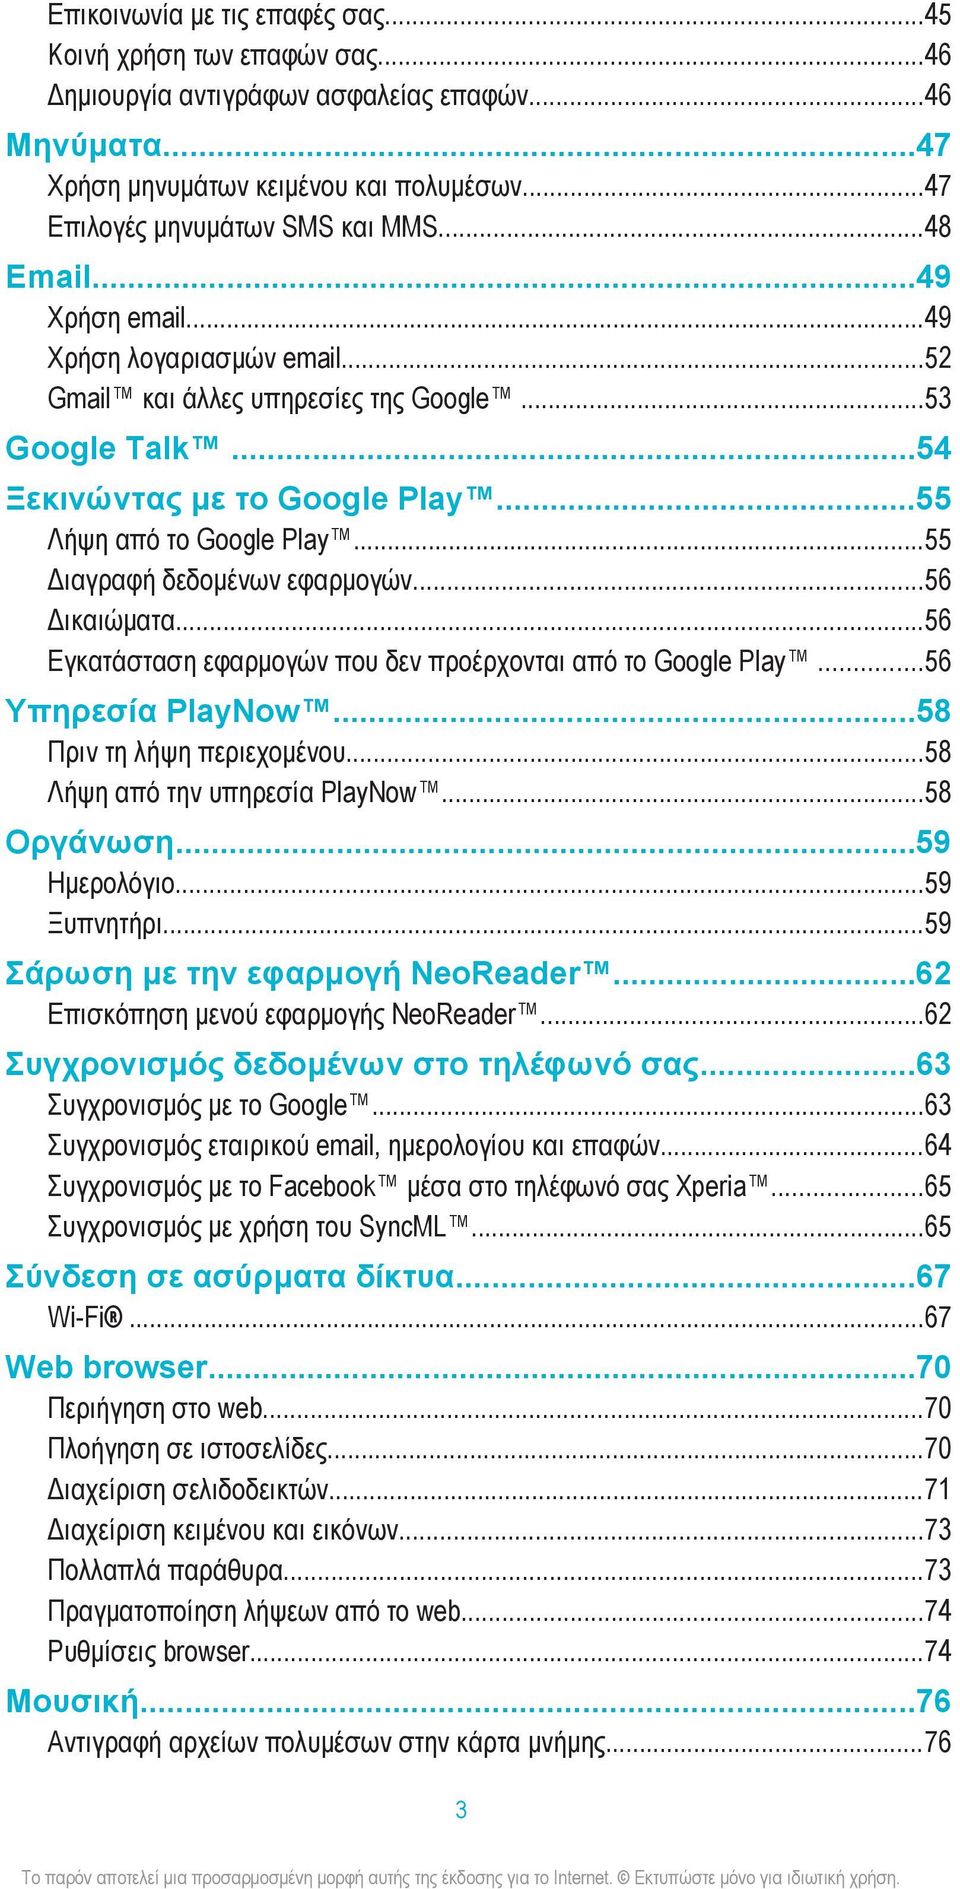 ..55 Διαγραφή δεδομένων εφαρμογών...56 Δικαιώματα...56 Εγκατάσταση εφαρμογών που δεν προέρχονται από το Google Play...56 Υπηρεσία PlayNow...58 Πριν τη λήψη περιεχομένου.